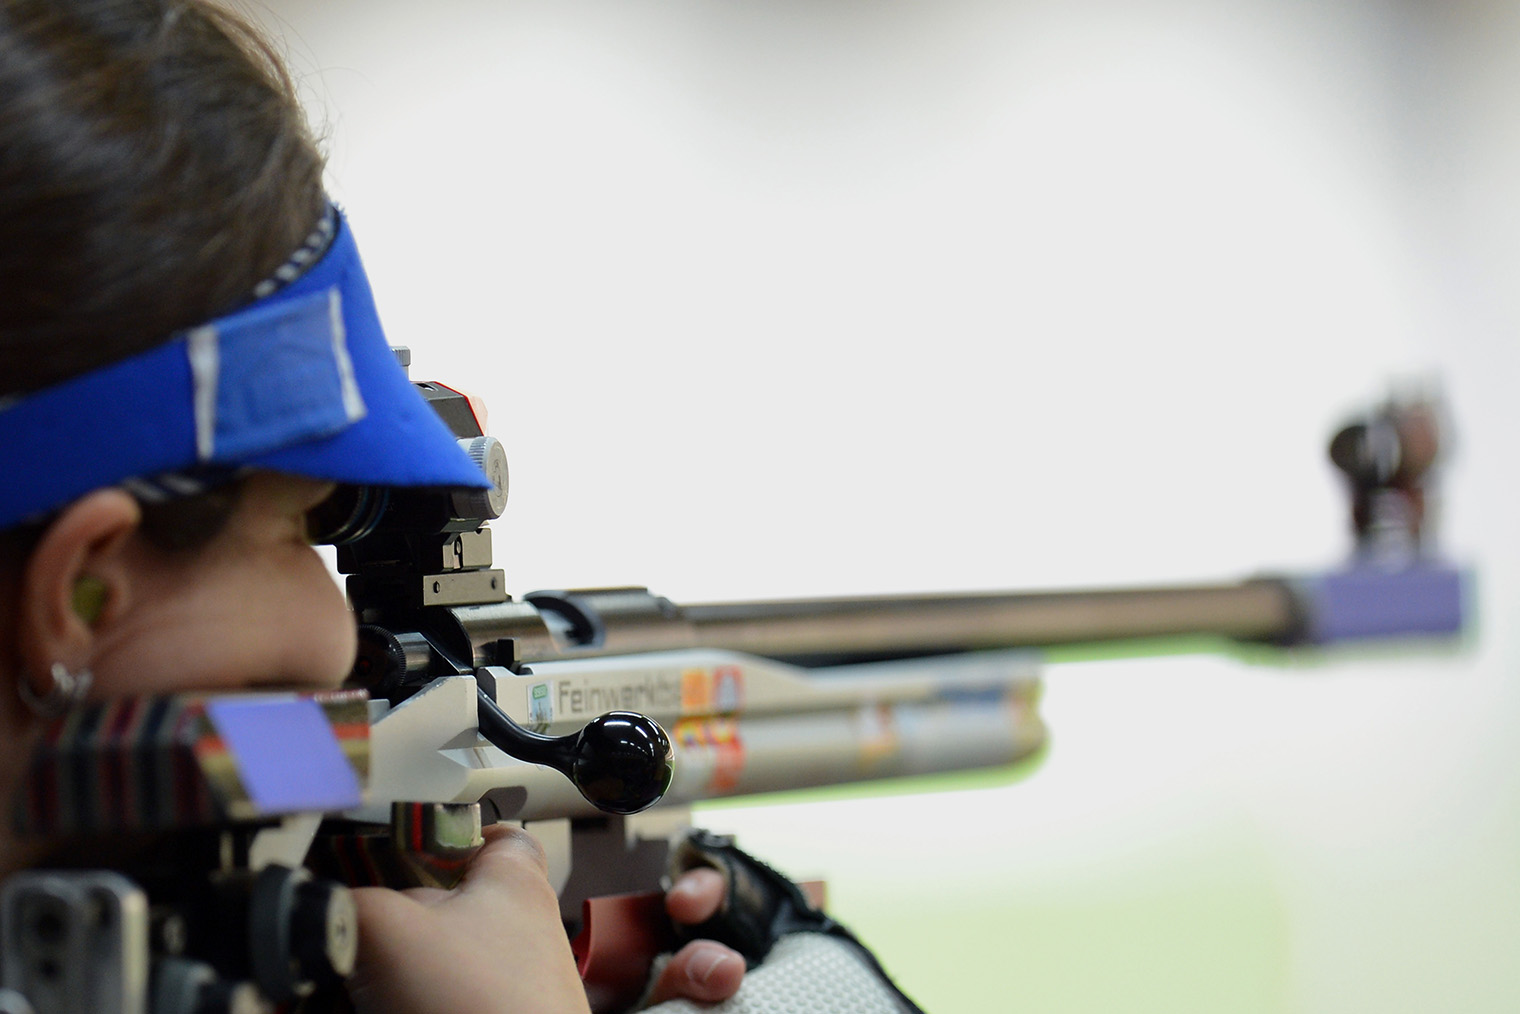 Барбара Энгледер из сборной Германии во время стрельбы из винтовки. Фотография: Lars Baron / Getty Images